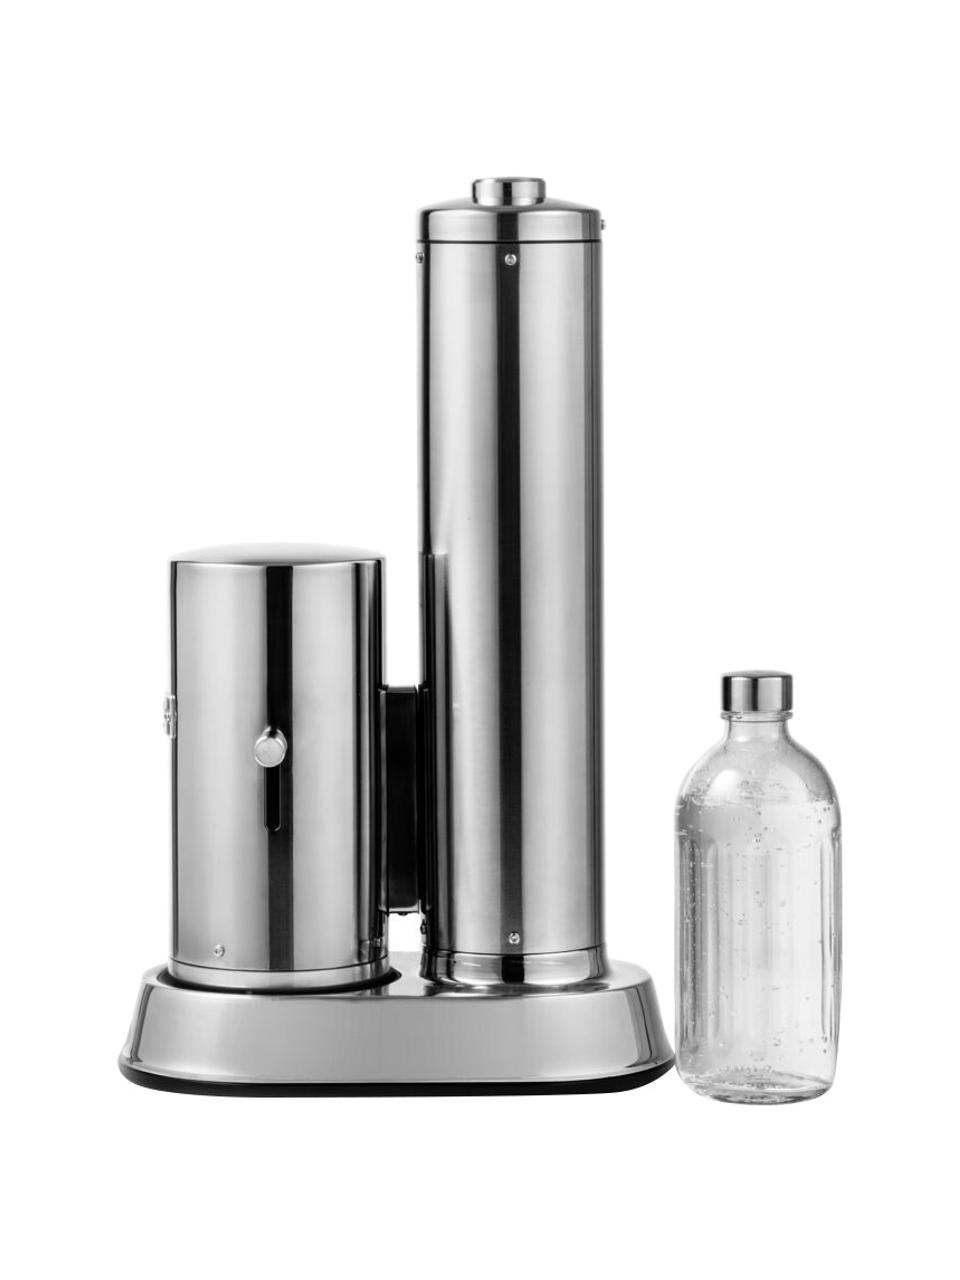 Výrobník perlivé vody Carbonator Pro, Lesklá stříbrná, Sada s různými velikostmi